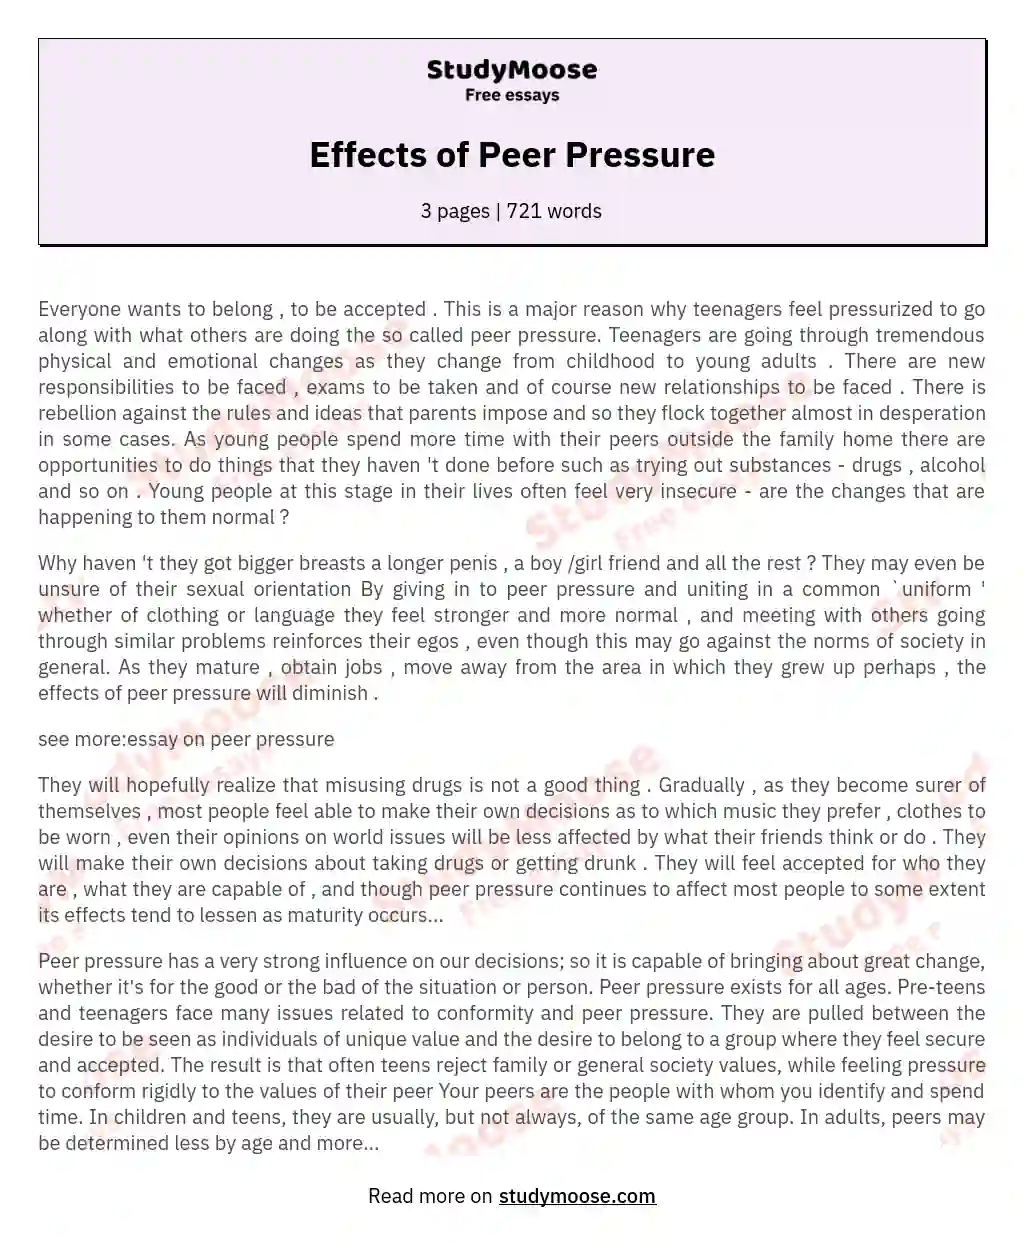 Effects of Peer Pressure essay